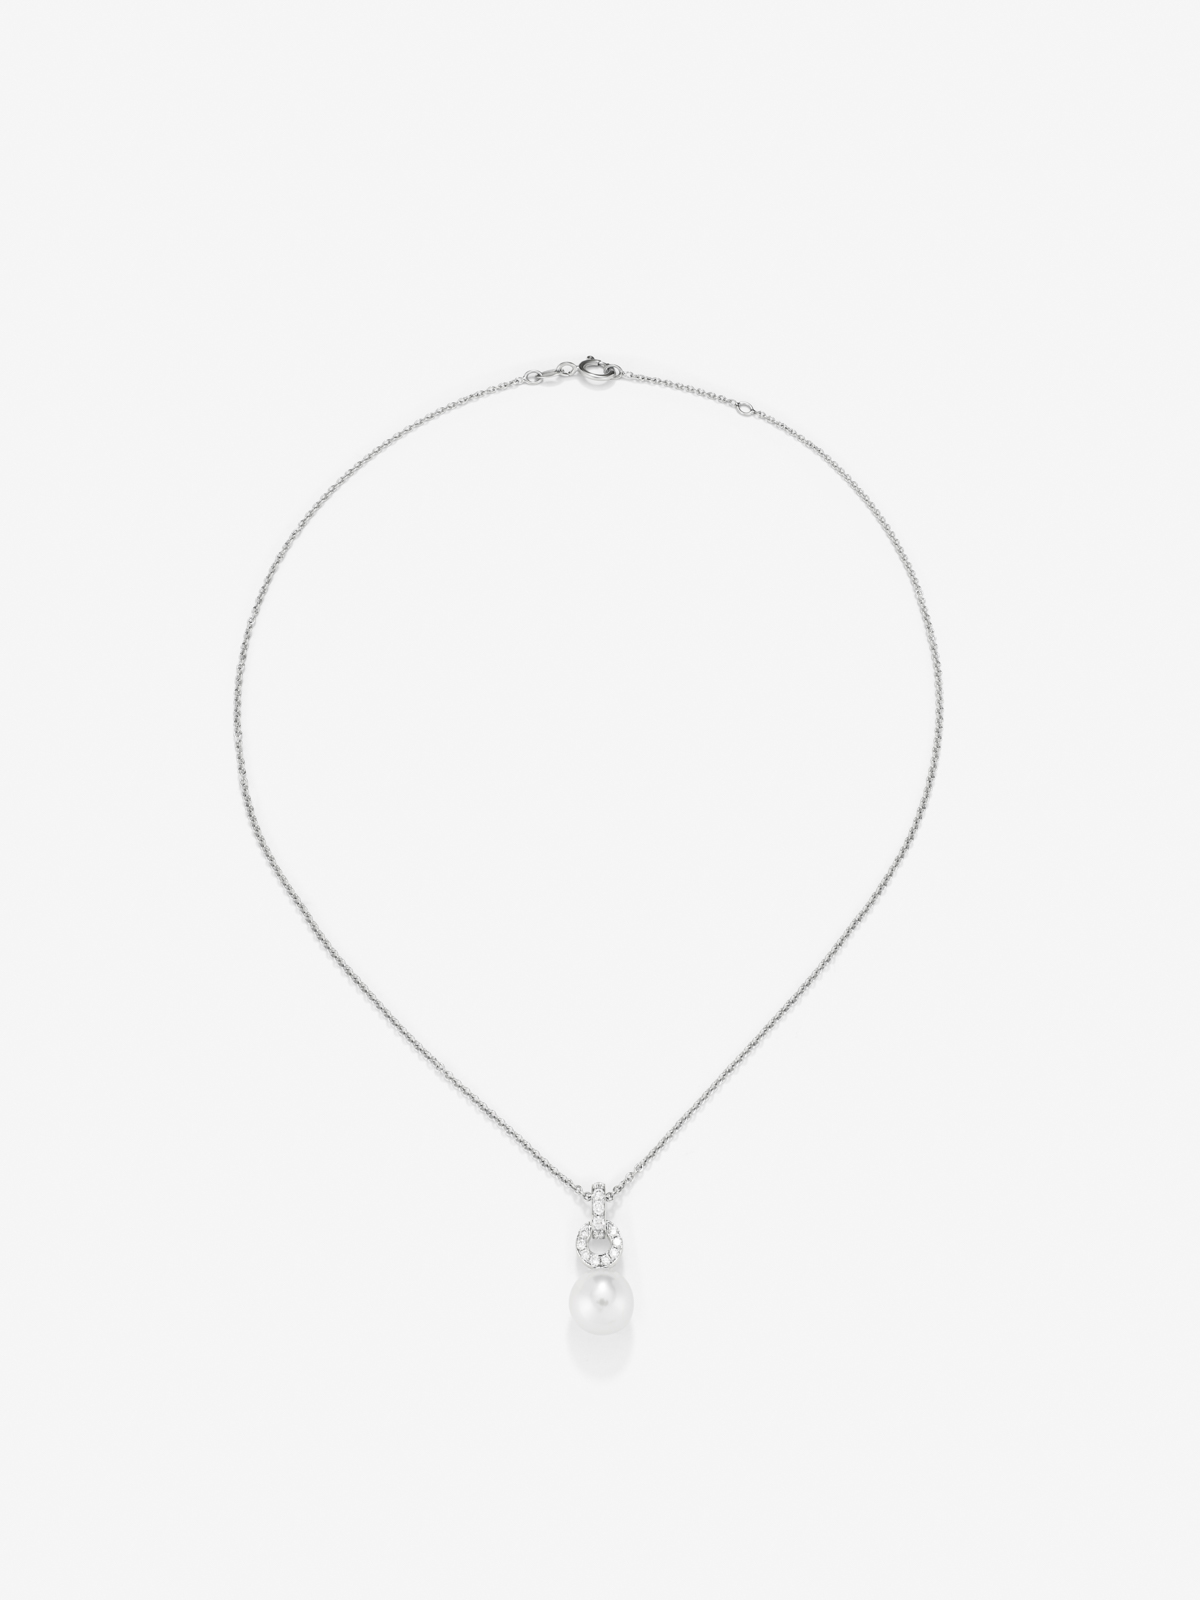 Colgante de cadena de oro blanco de 18k con aro en diamante y perla australiana de 9,5 mm